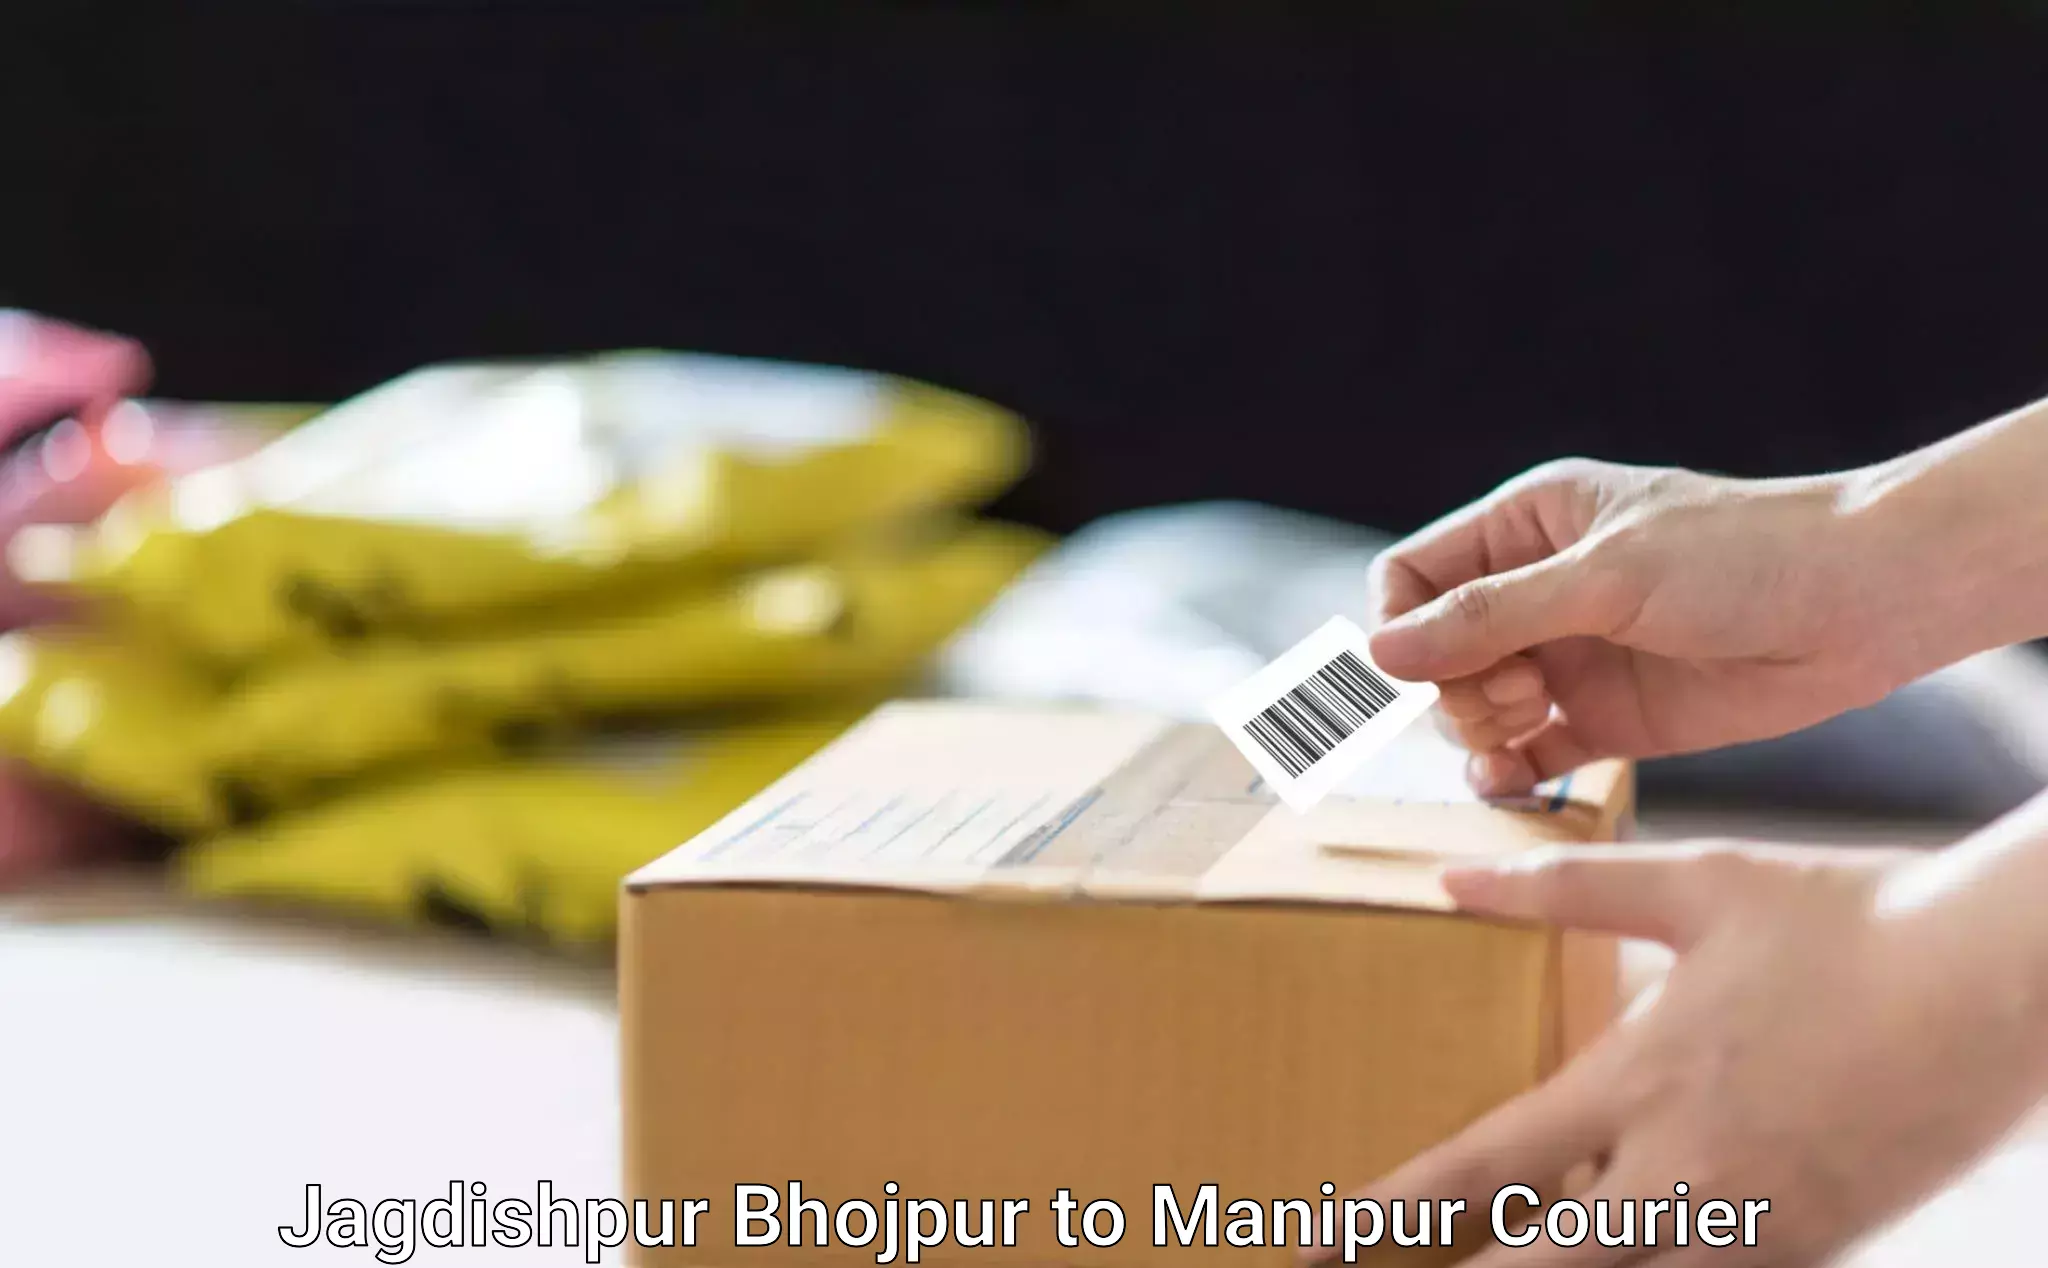 Furniture moving assistance Jagdishpur Bhojpur to IIIT Senapati